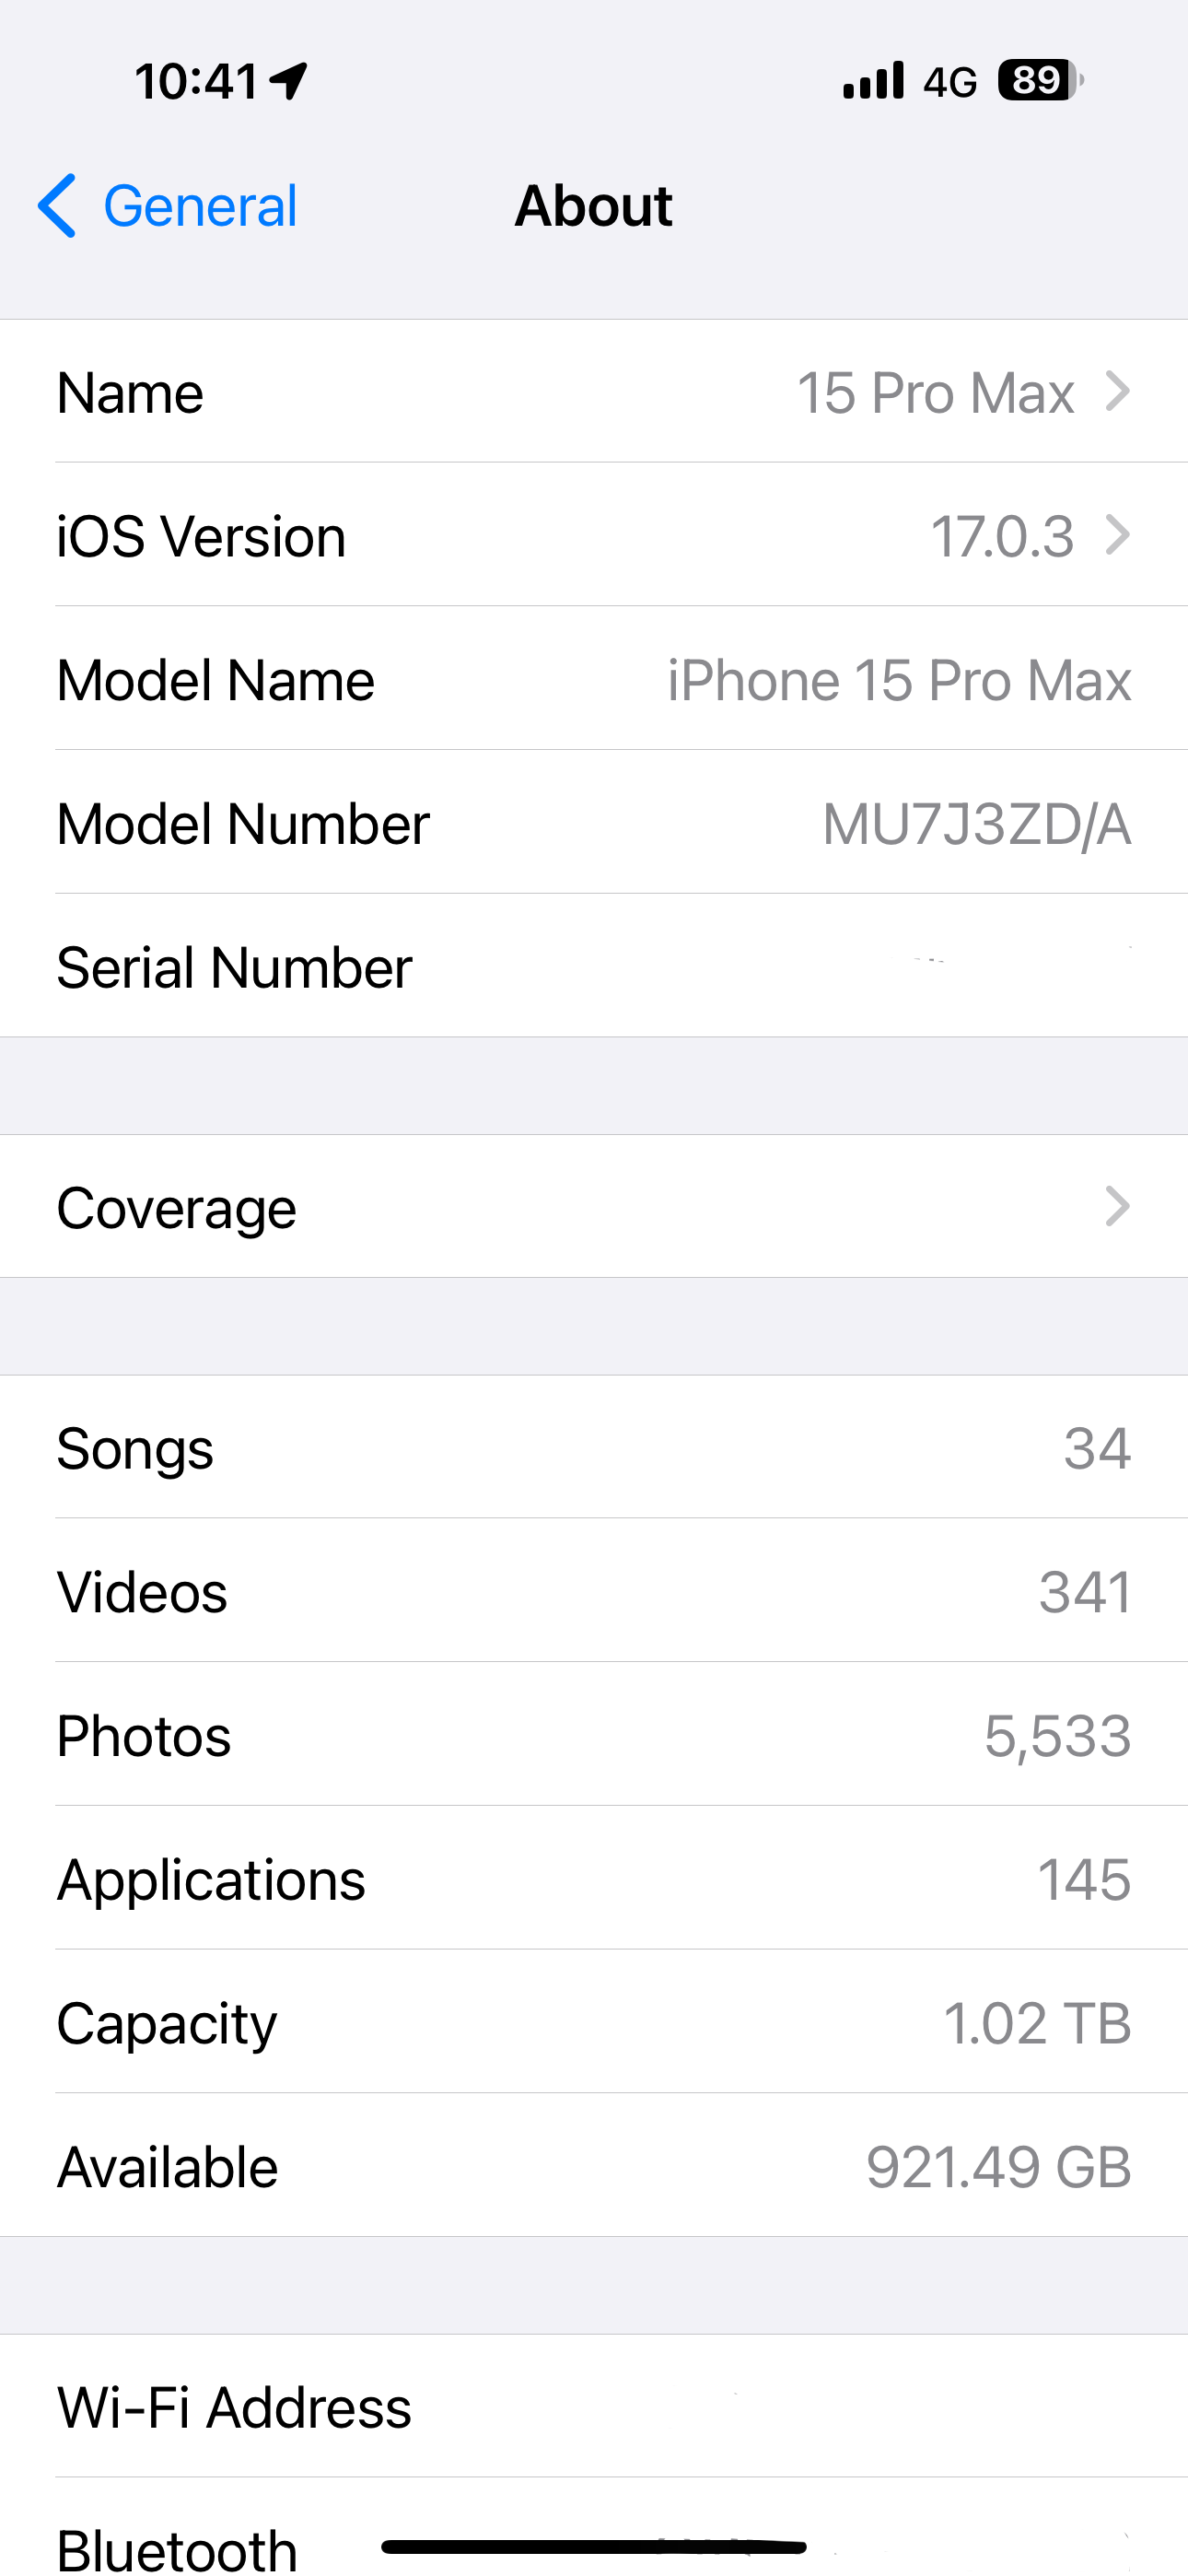 iOS 17.0.3 updated